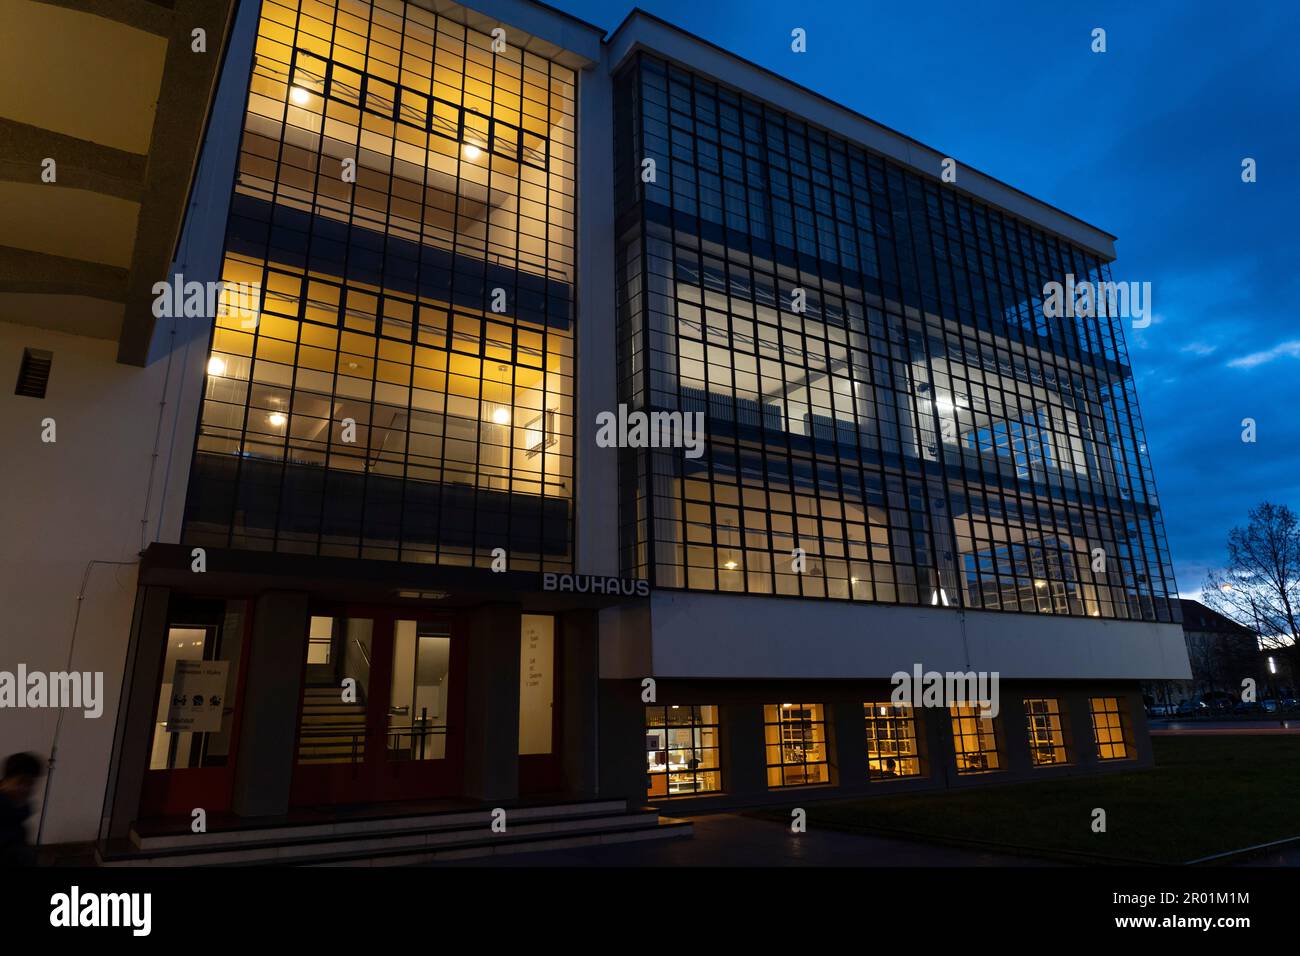 Mur-rideau de verre sur la façade, bauhaus School, Dessau, République fédérale d'Allemagne. Banque D'Images